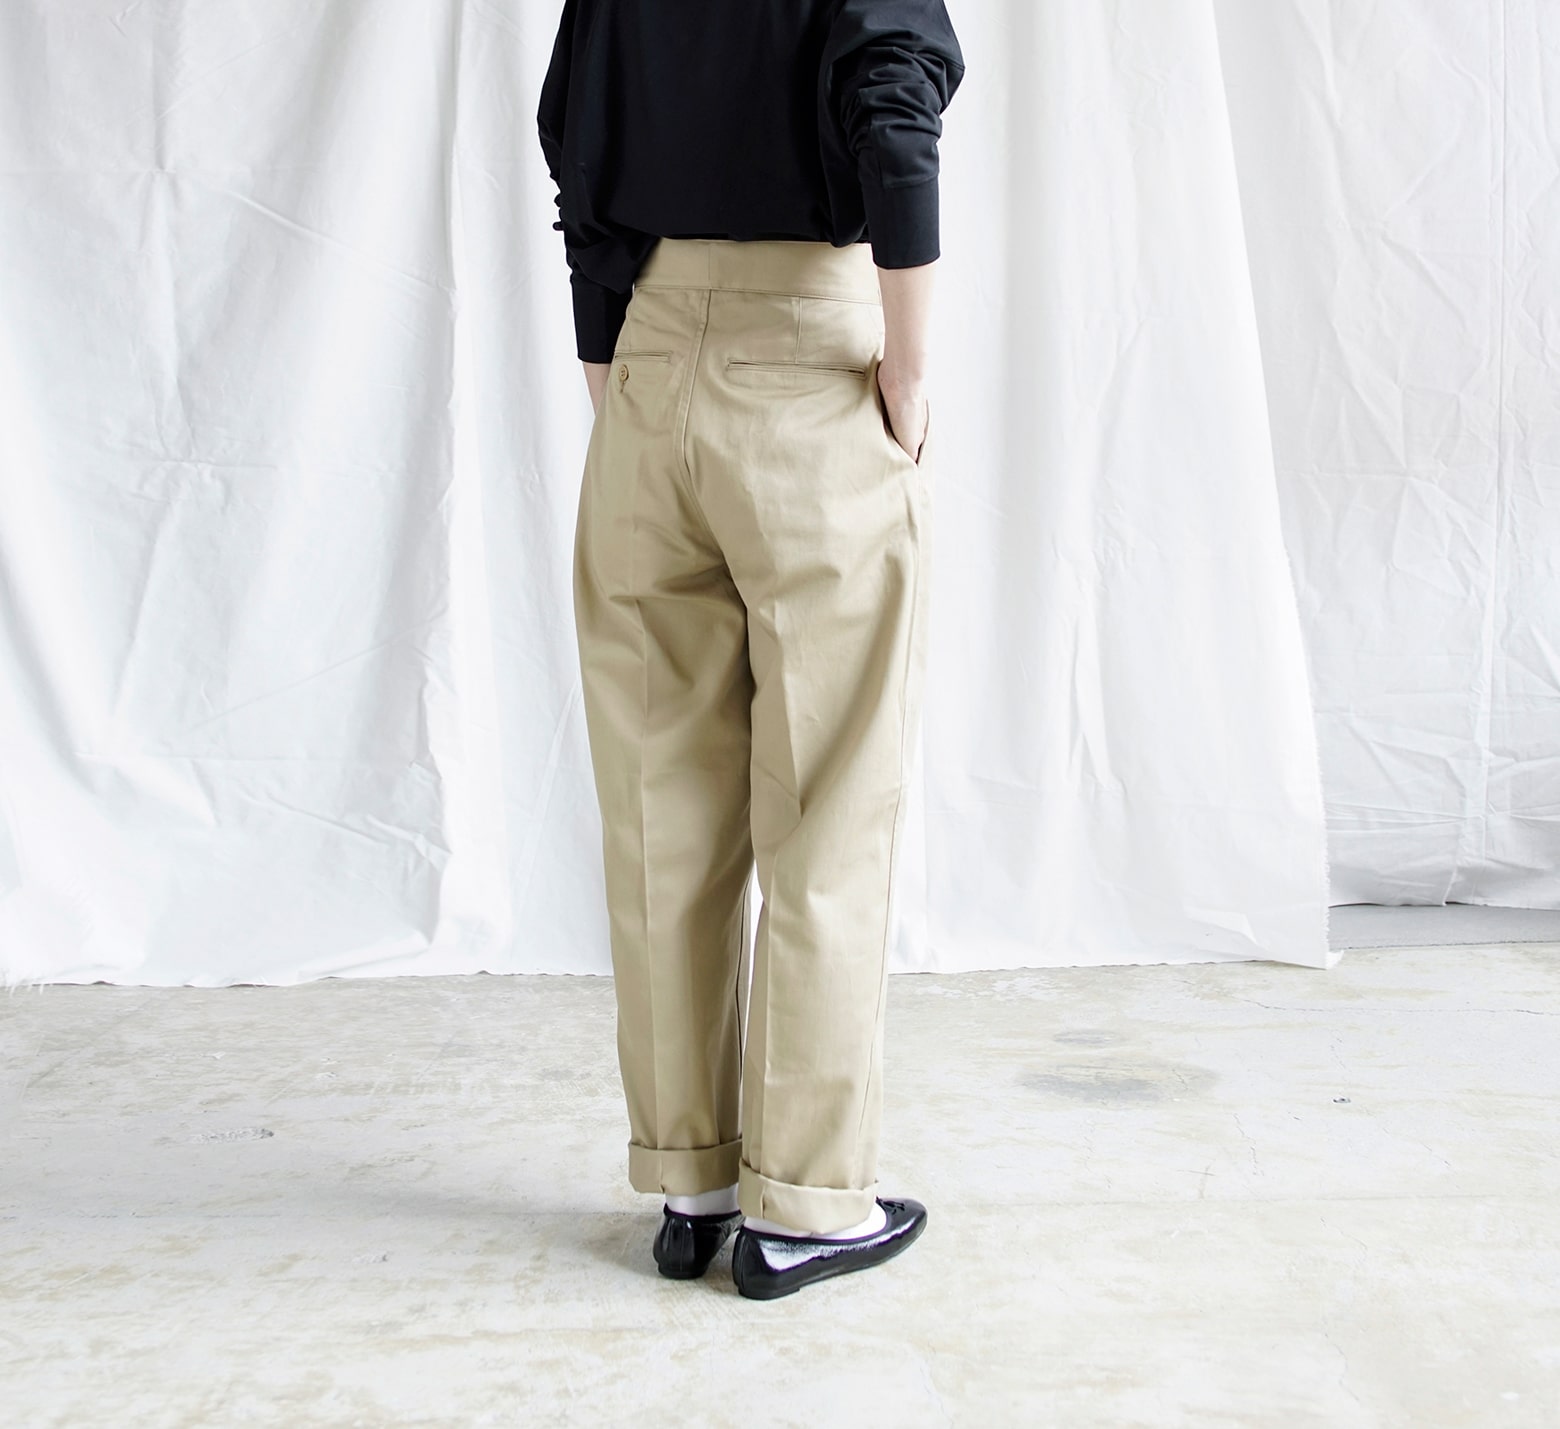 LENO(リノ)ダブルベルトグルカトラウザーズ“Double Belted Gurkha Trousers” leno-pt001【サイズ交換初回無料】